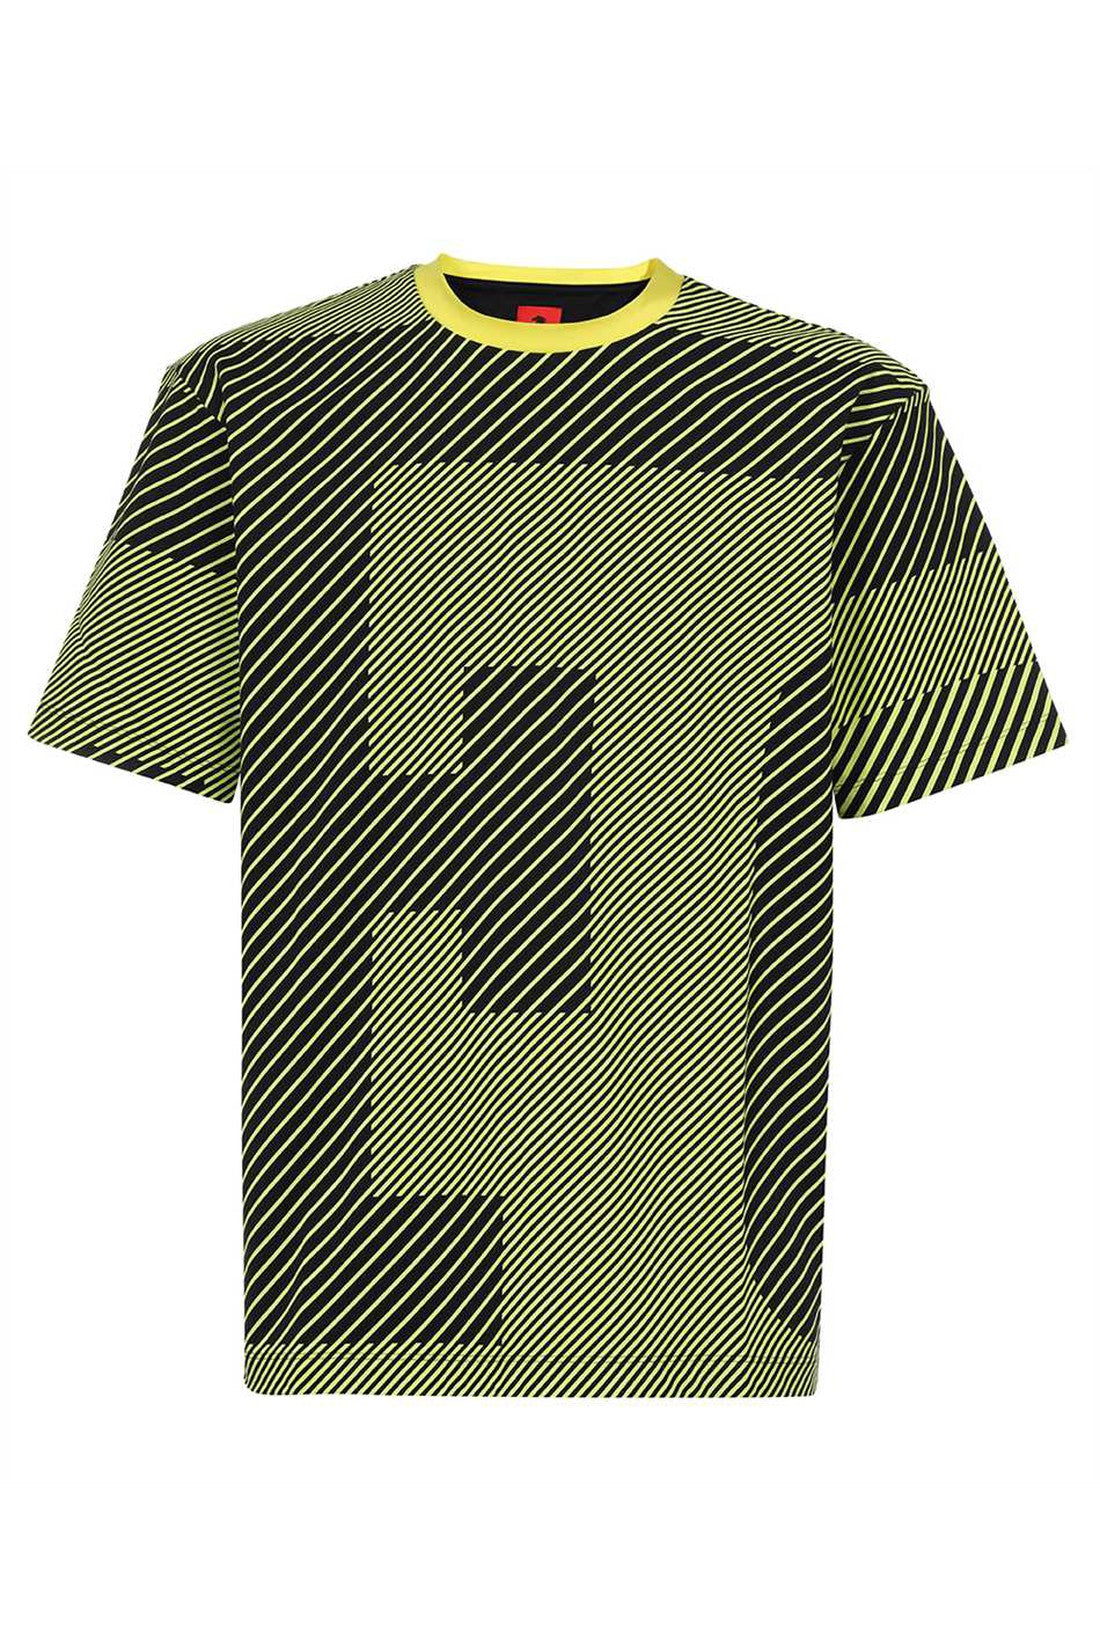 Logo cotton t-shirt-Ferrari-OUTLET-SALE-L-ARCHIVIST